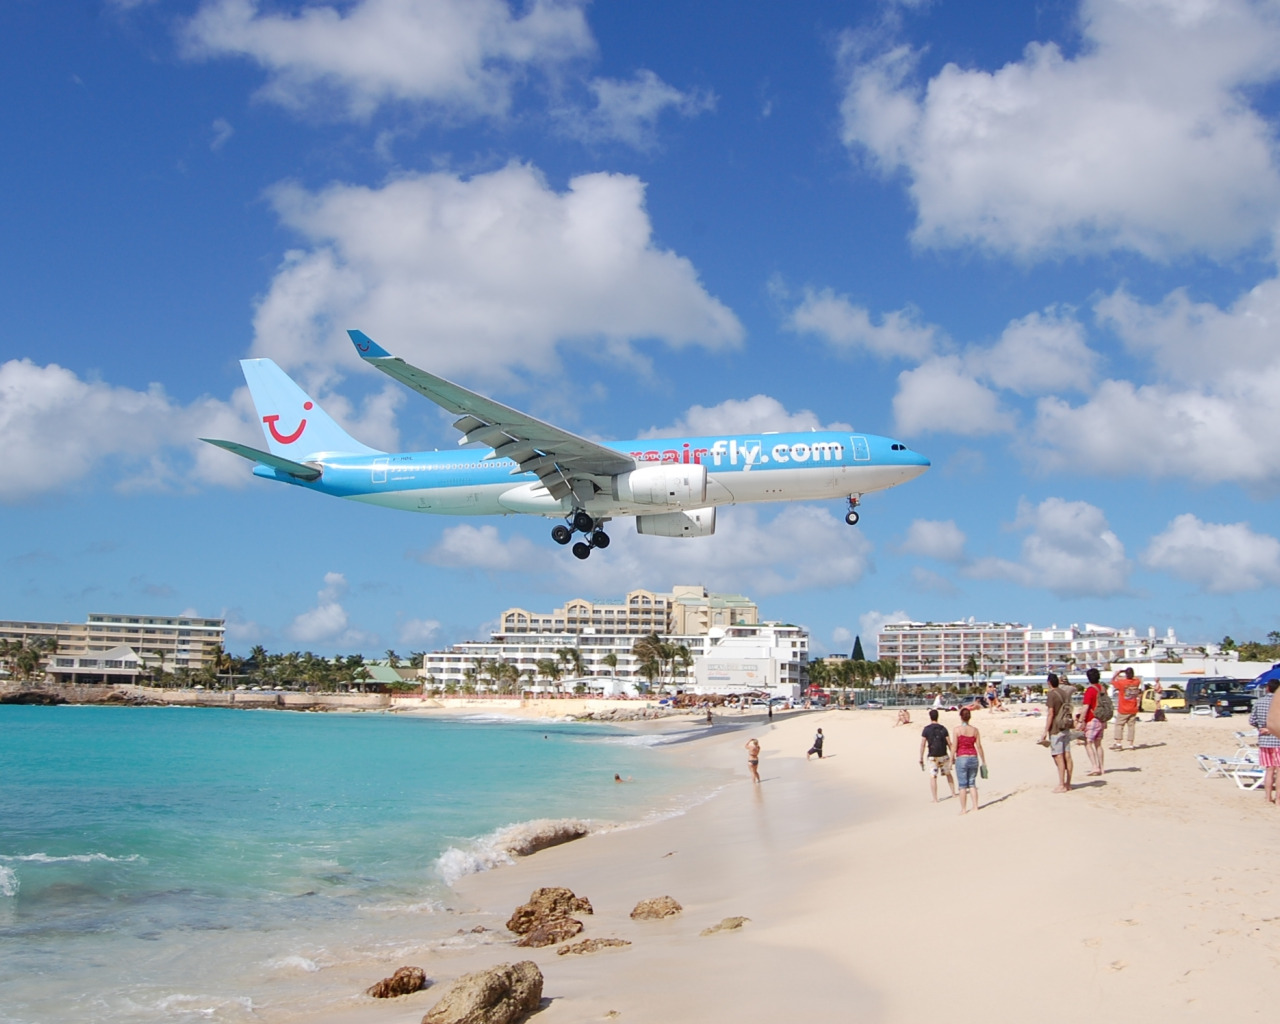 Скачать обои пляж, фото, самолёт, Maho Beach, St Maarten, раздел ситуации в...